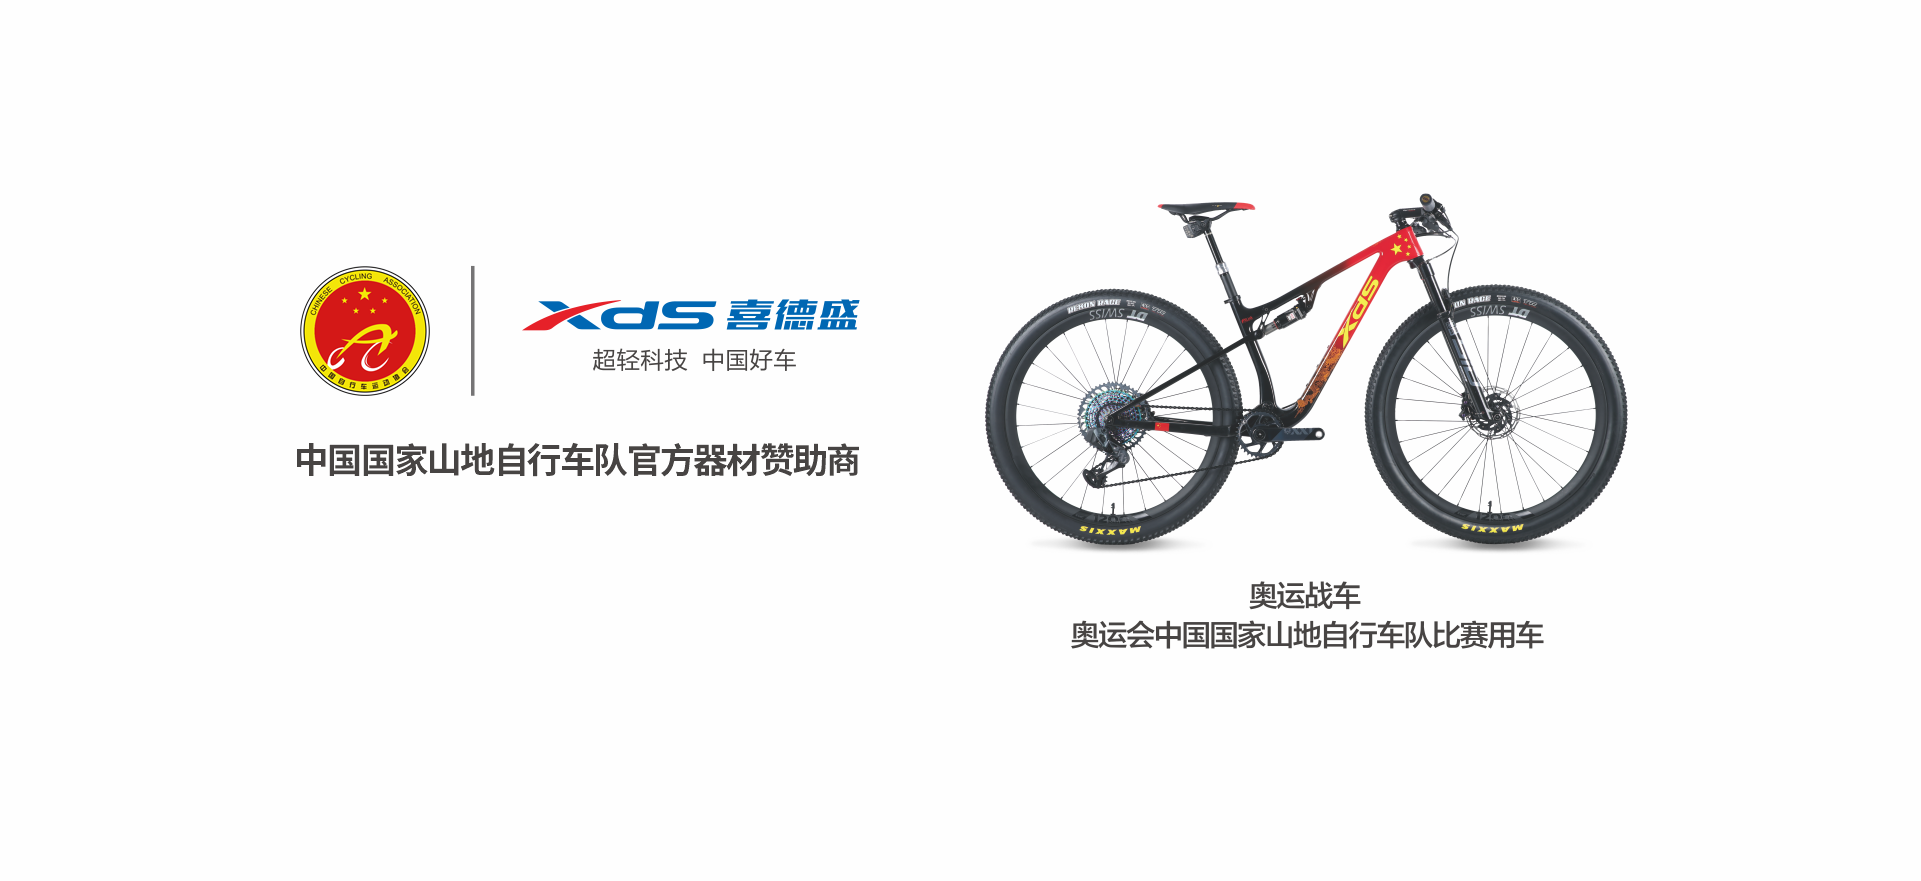 中國國家山地自行車隊官方器材贊助商